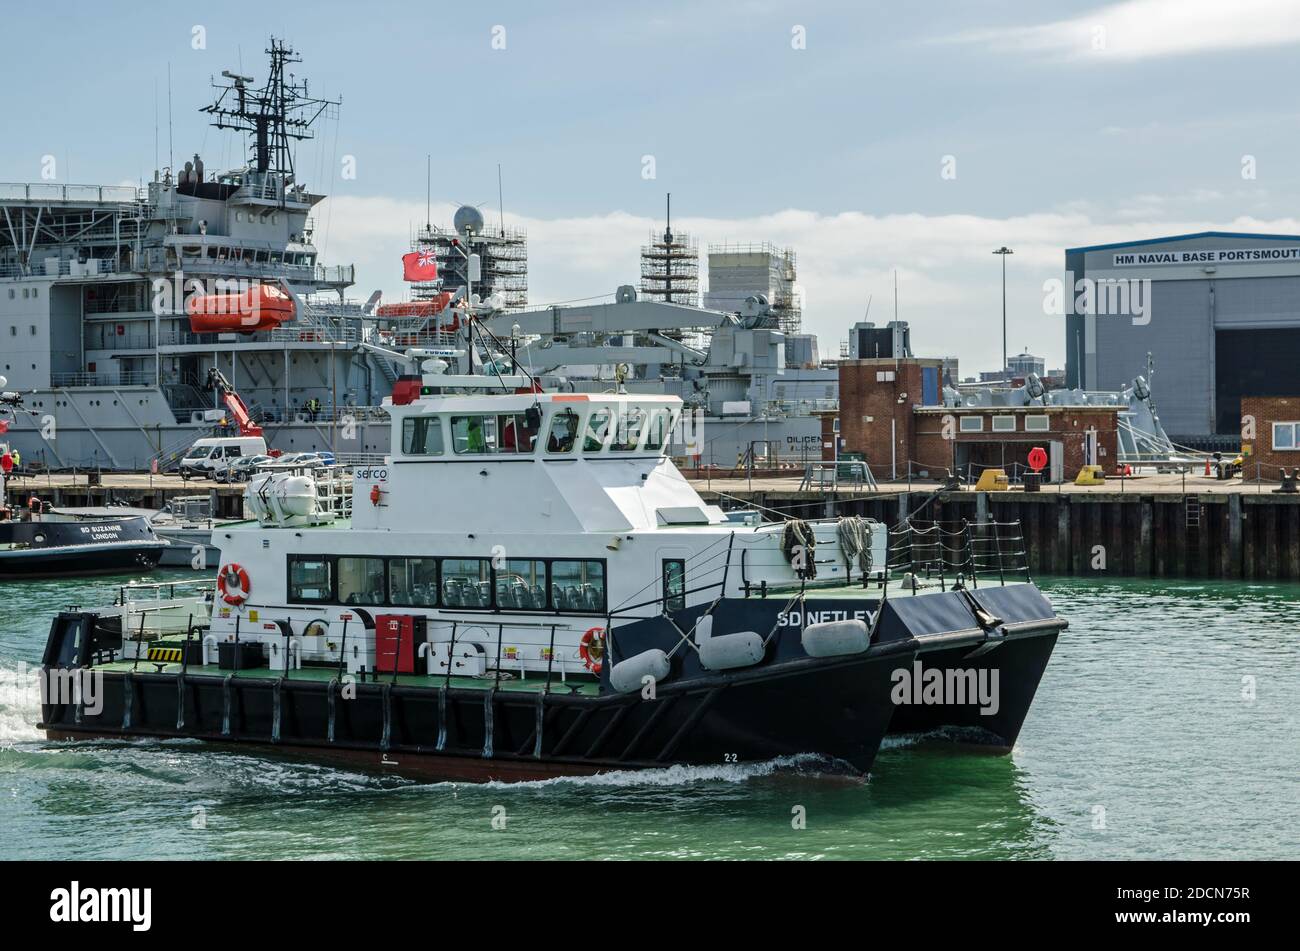 Portsmouth, Großbritannien - 8. September 2020: Der Beifahrer-Tender SD Netlet fährt vom Kai weg, um Passagiere von einem der Royal Navy Shi abzuholen Stockfoto